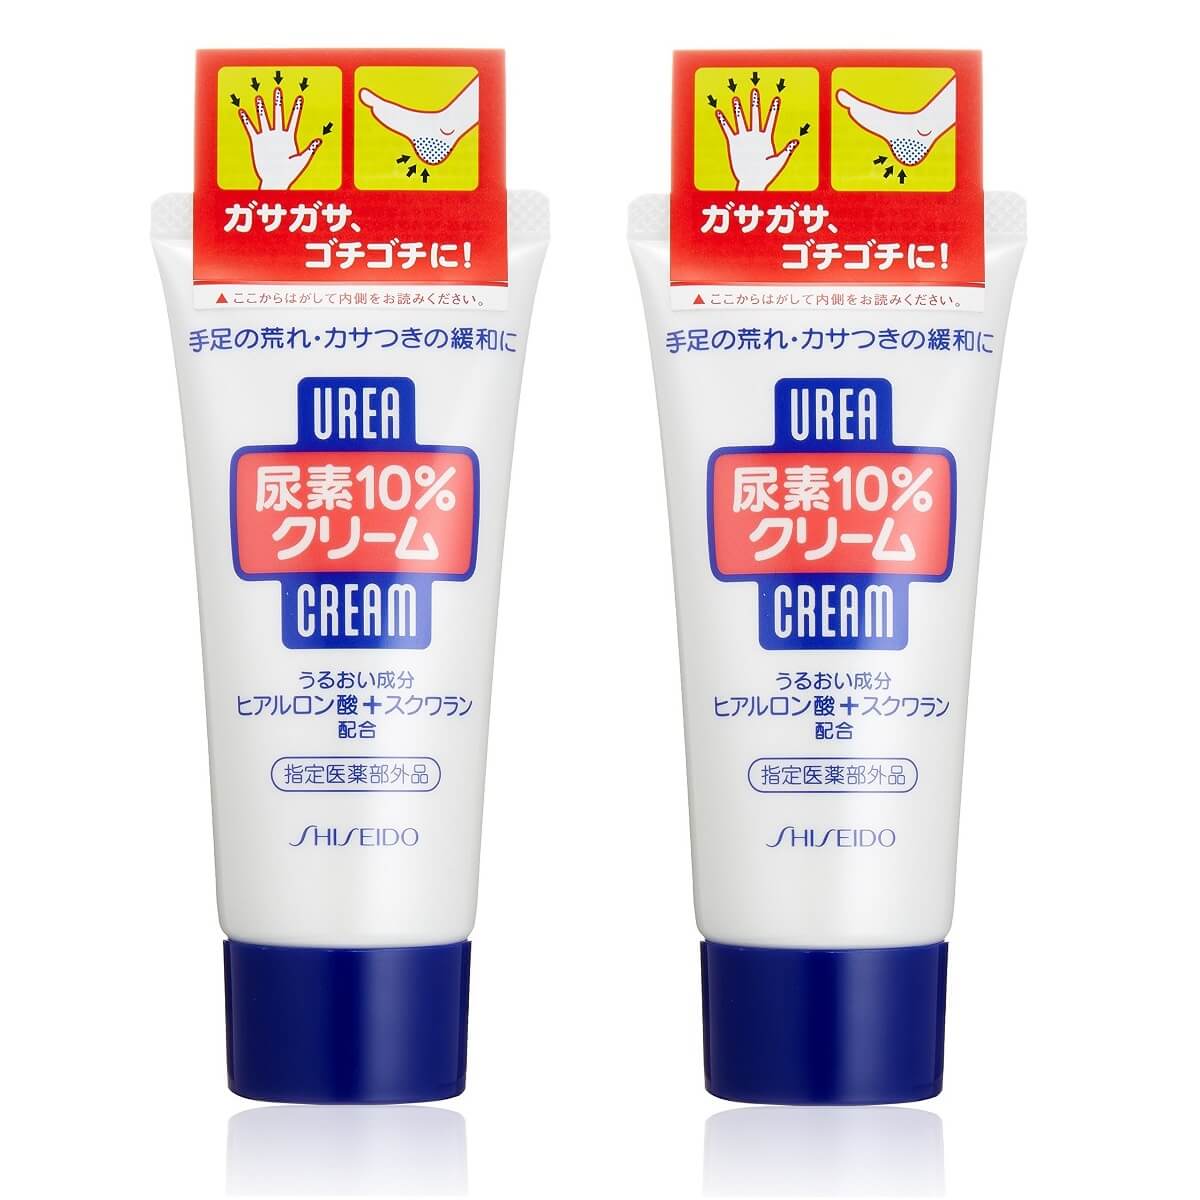 Shiseido Japan FT Urea Hand Cream (60g) - 2 Bottles - Buy at New Green Nutrition